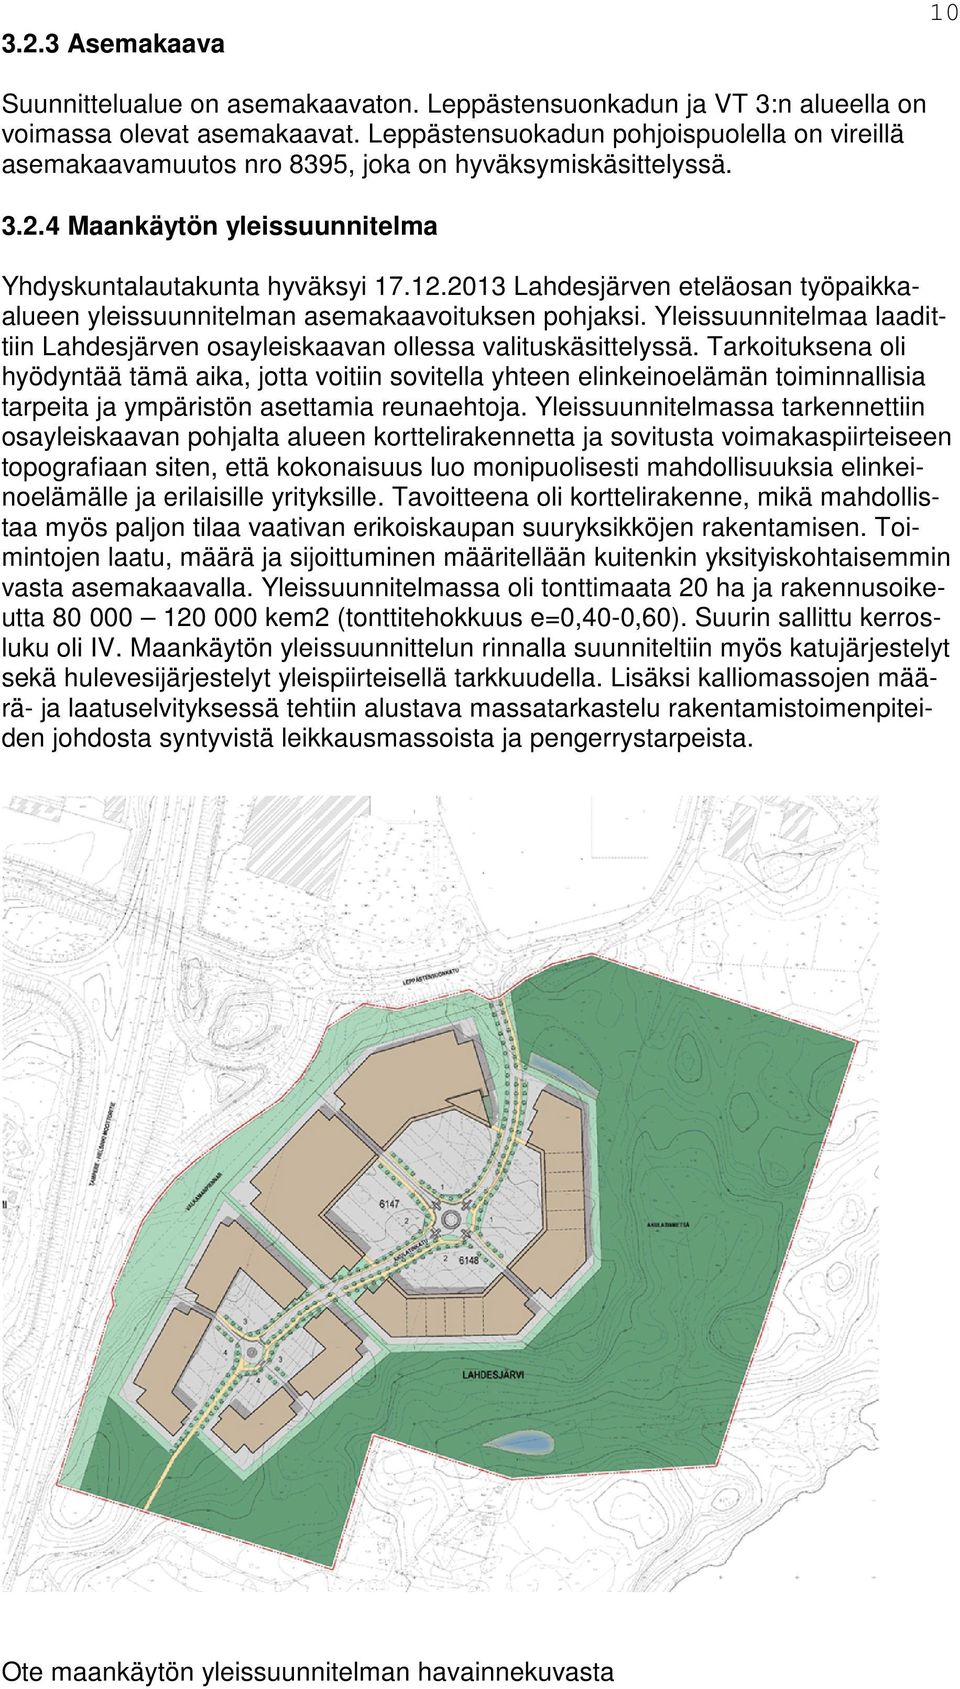 2013 Lahdesjärven eteläosan työpaikkaalueen yleissuunnitelman asemakaavoituksen pohjaksi. Yleissuunnitelmaa laadittiin Lahdesjärven osayleiskaavan ollessa valituskäsittelyssä.